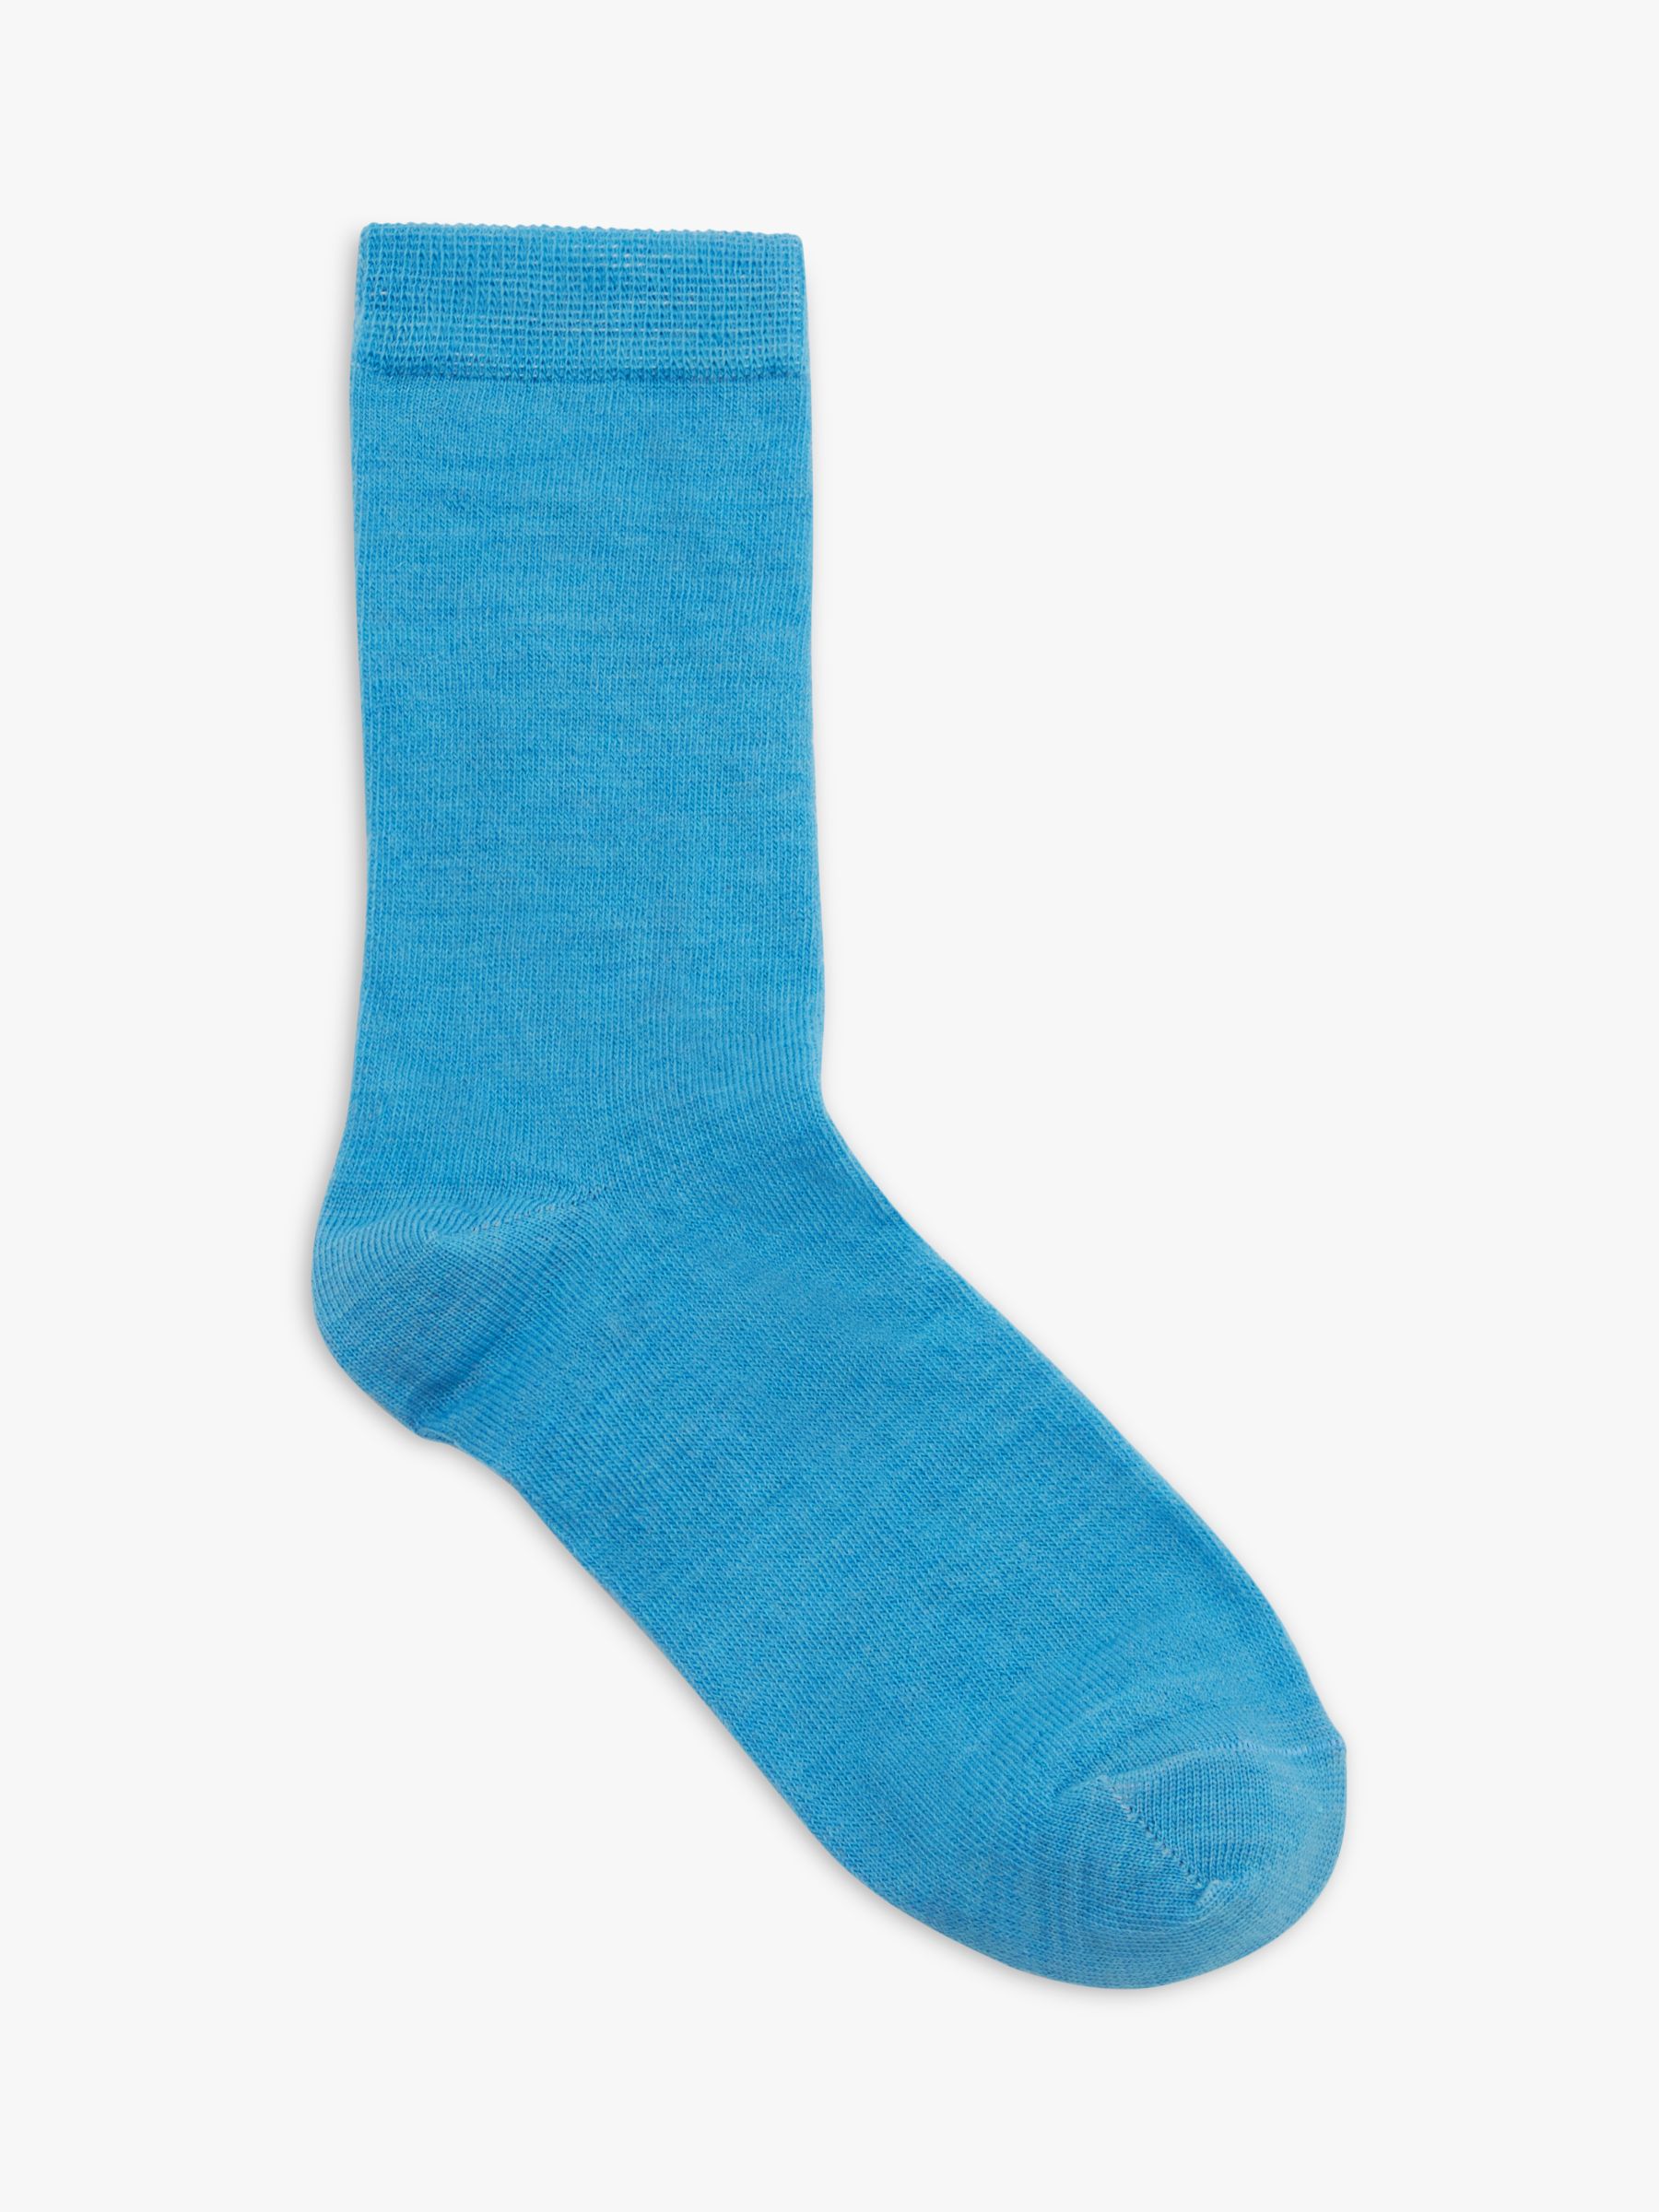 John Lewis Merino Wool Mix Ankle Socks, Pack of 2, Light Blue at John ...